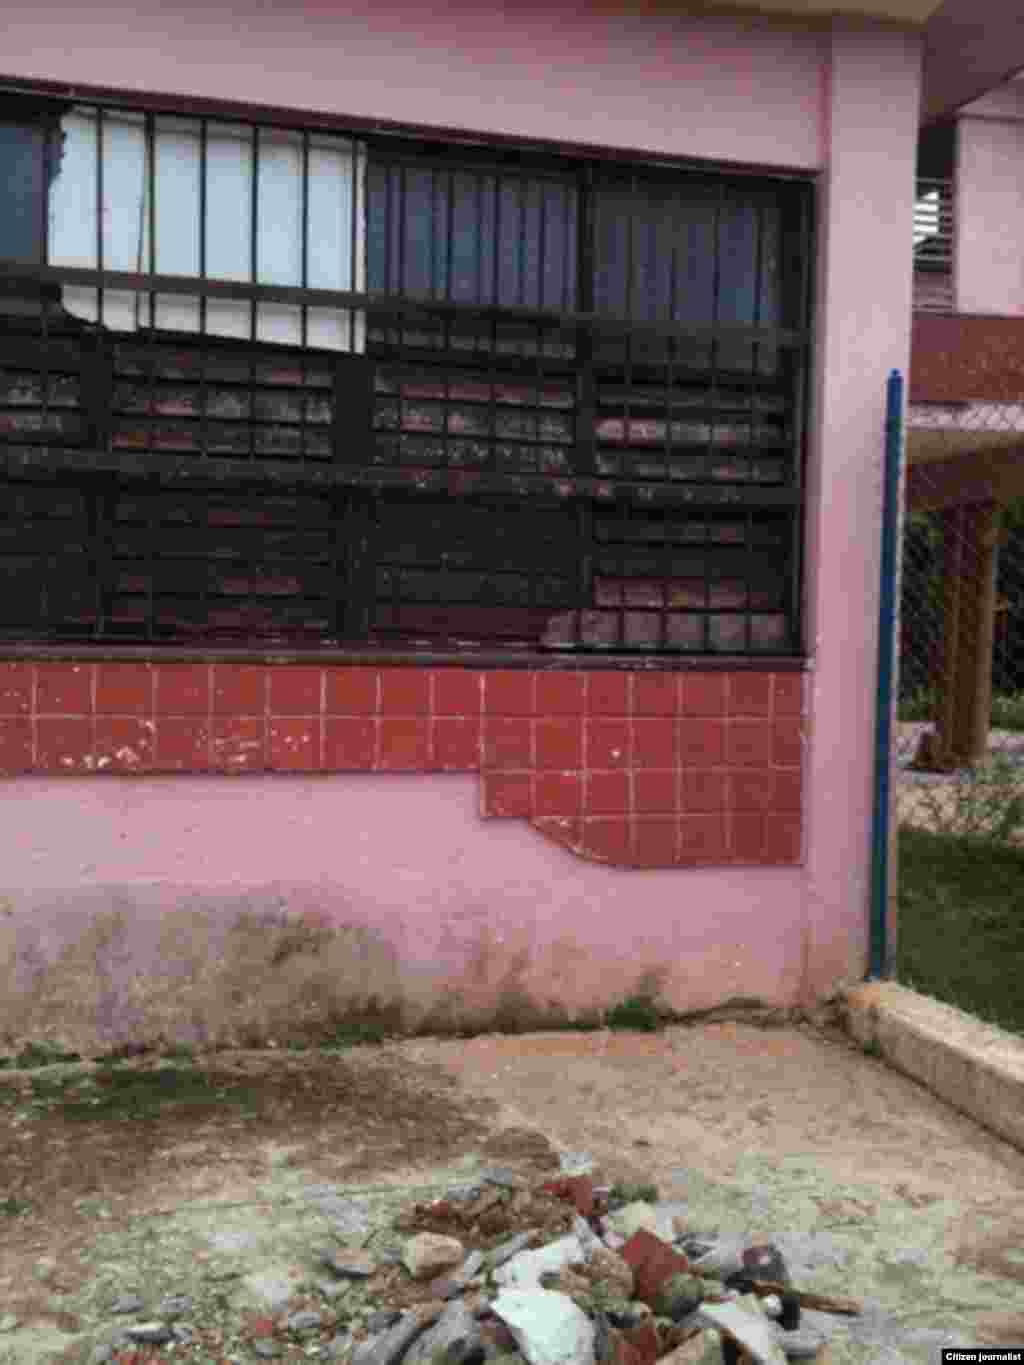 Reporta Cuba Círculo Infantil y escuelas cerrados Foto Marta Domínguez 